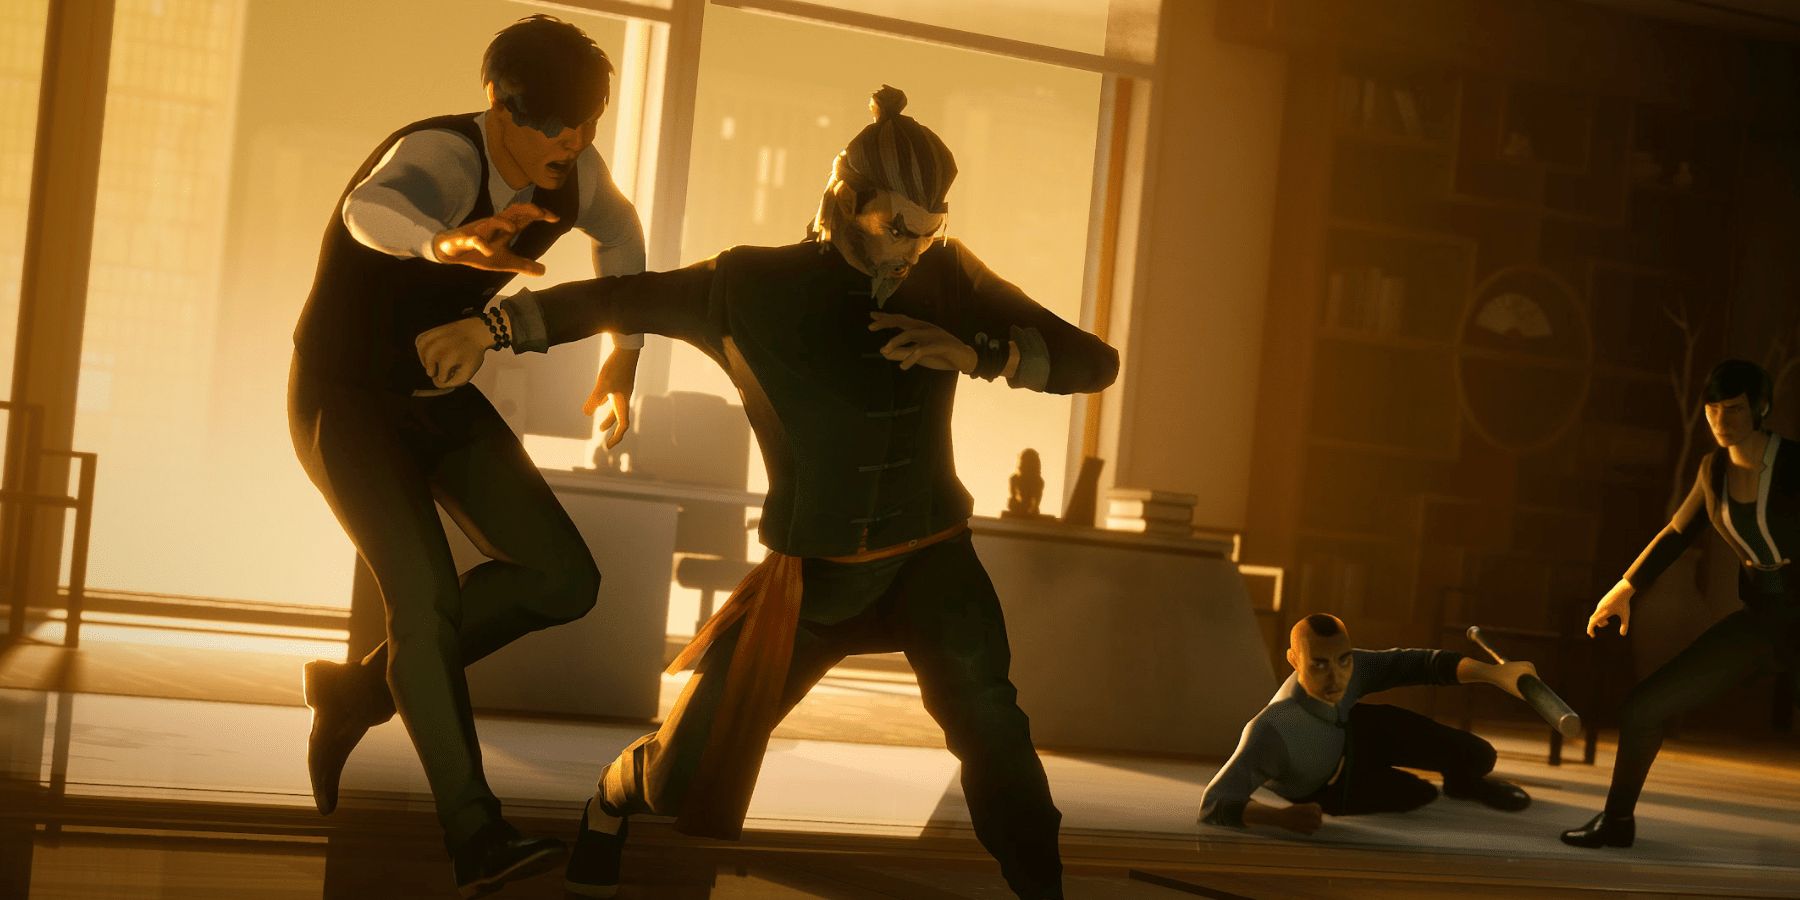 Sifu protagonist fights three men at sunset in dojo